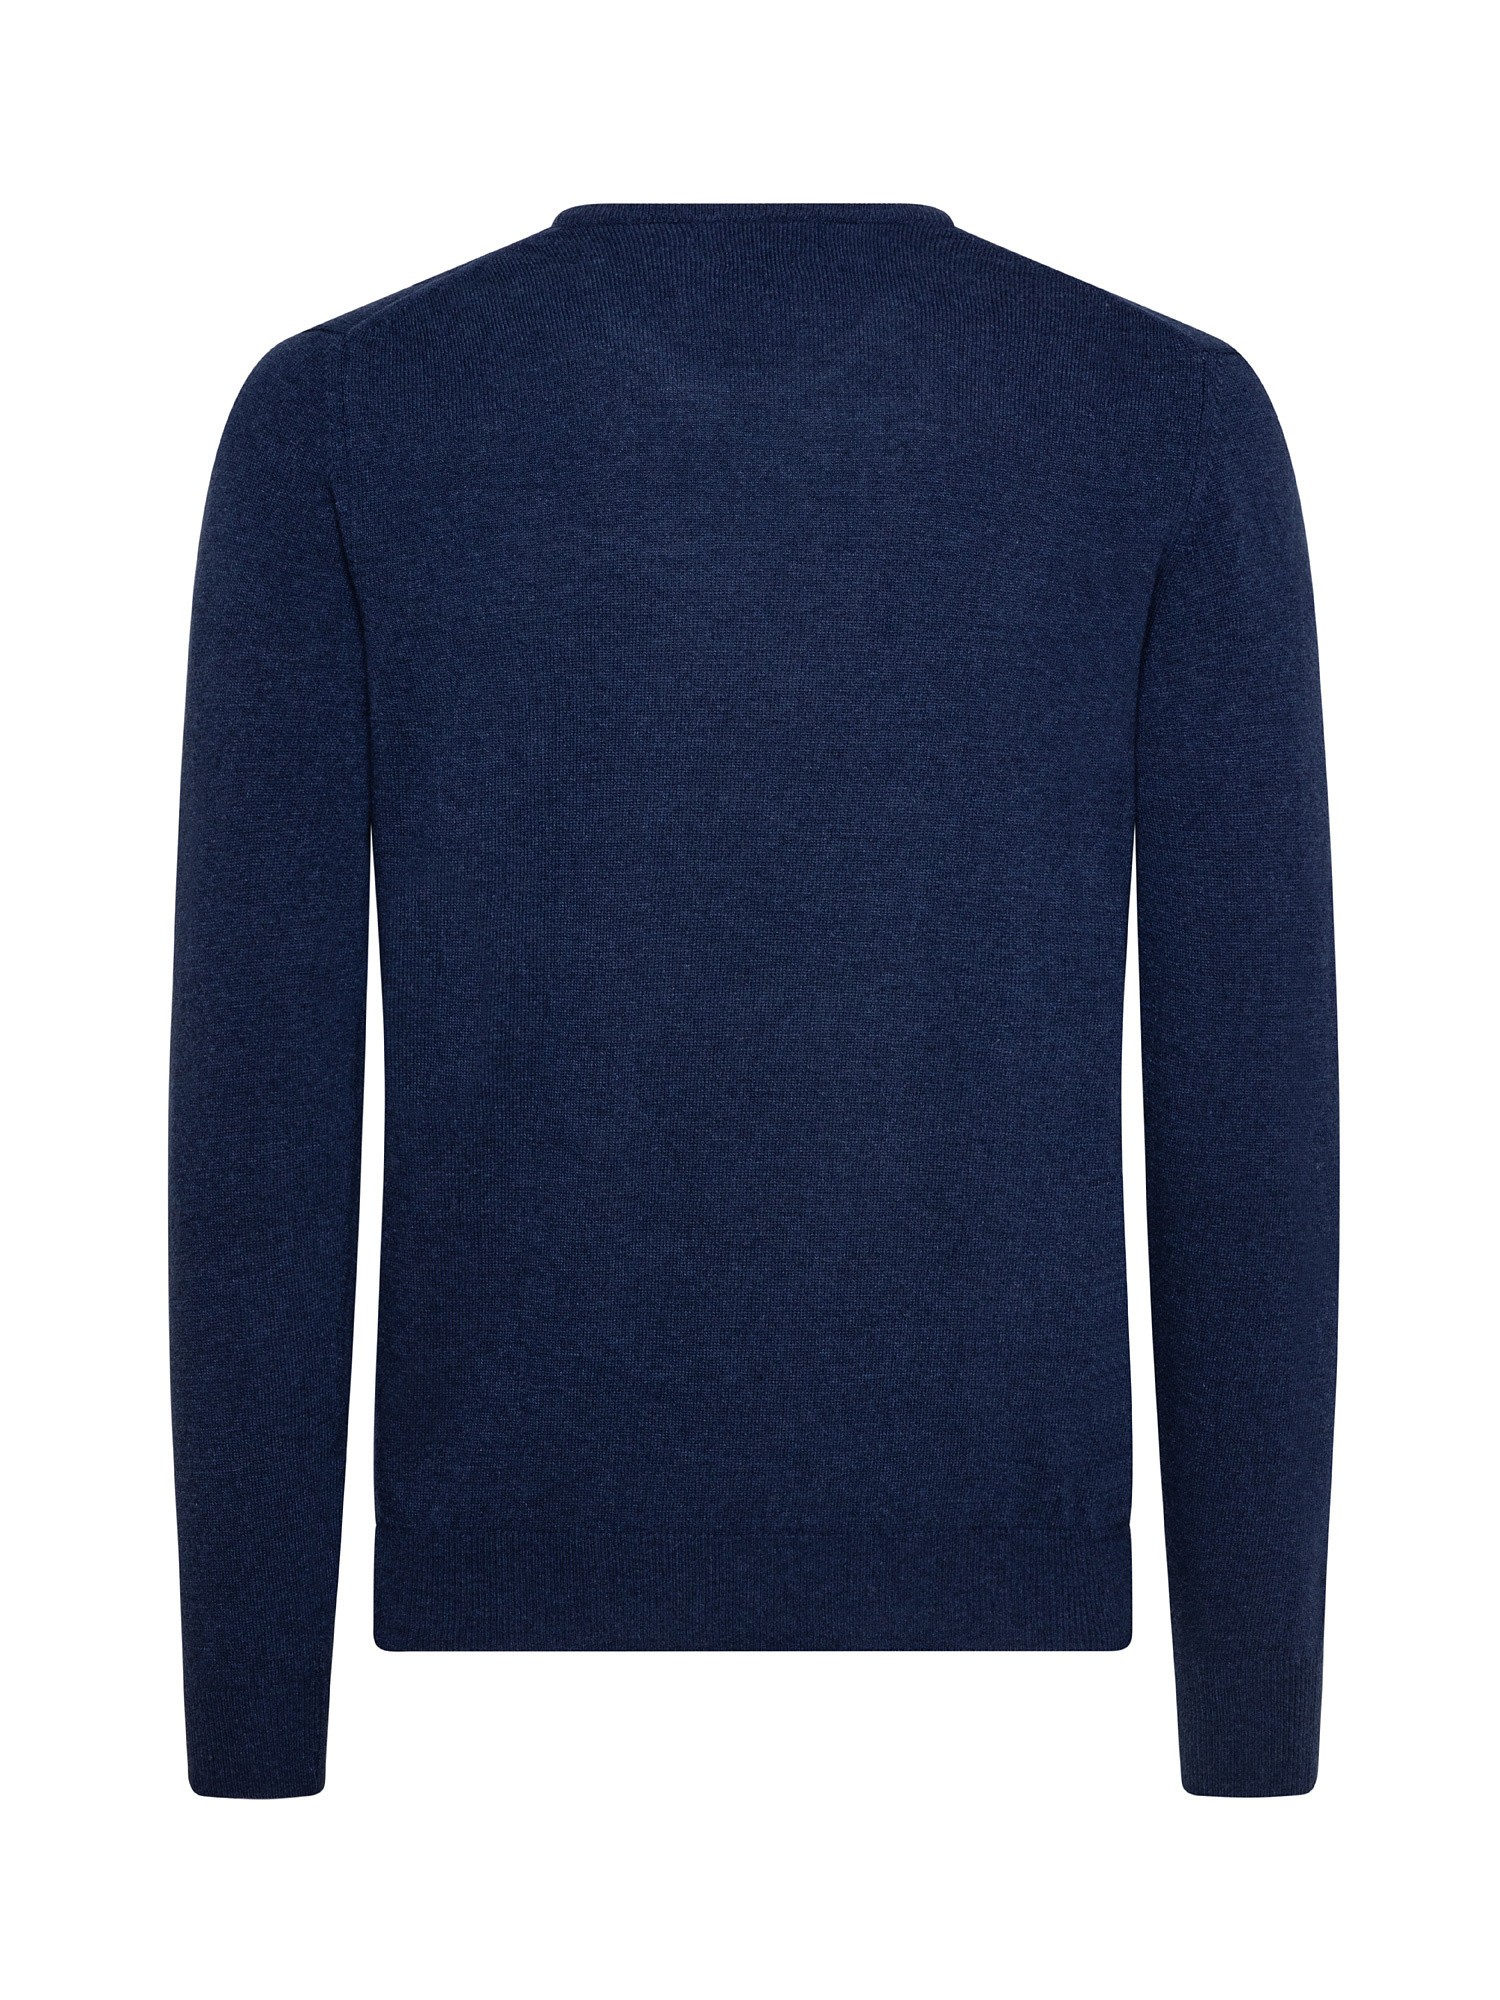 Basic cashmere blend pullover, Dark Blue, large image number 1